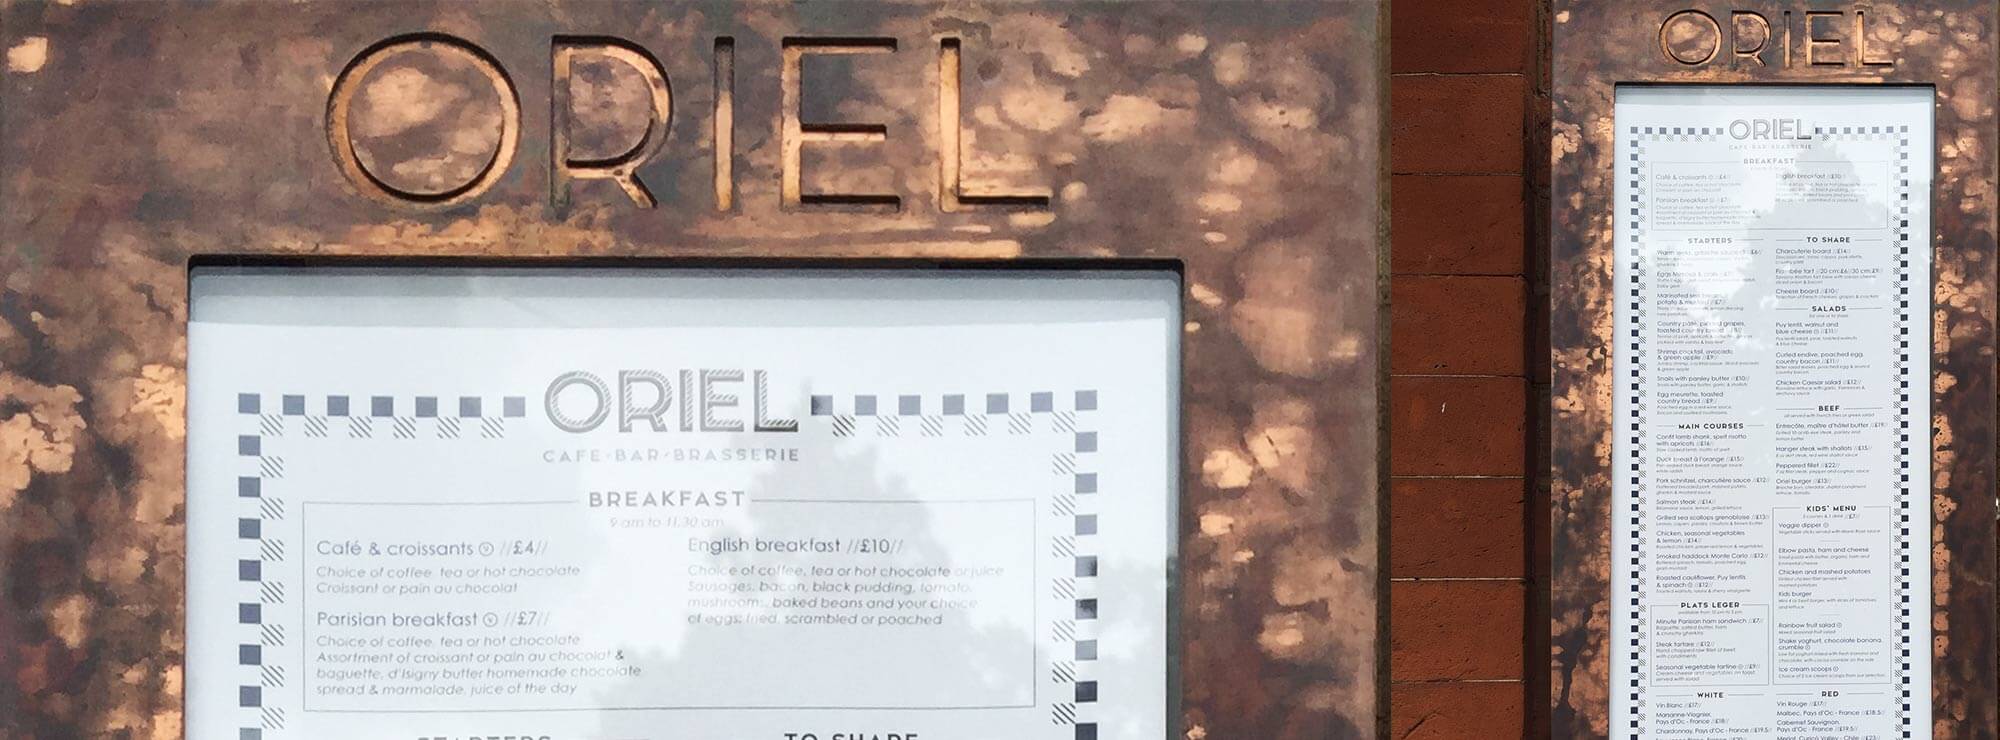 Oriel - a checkered identity